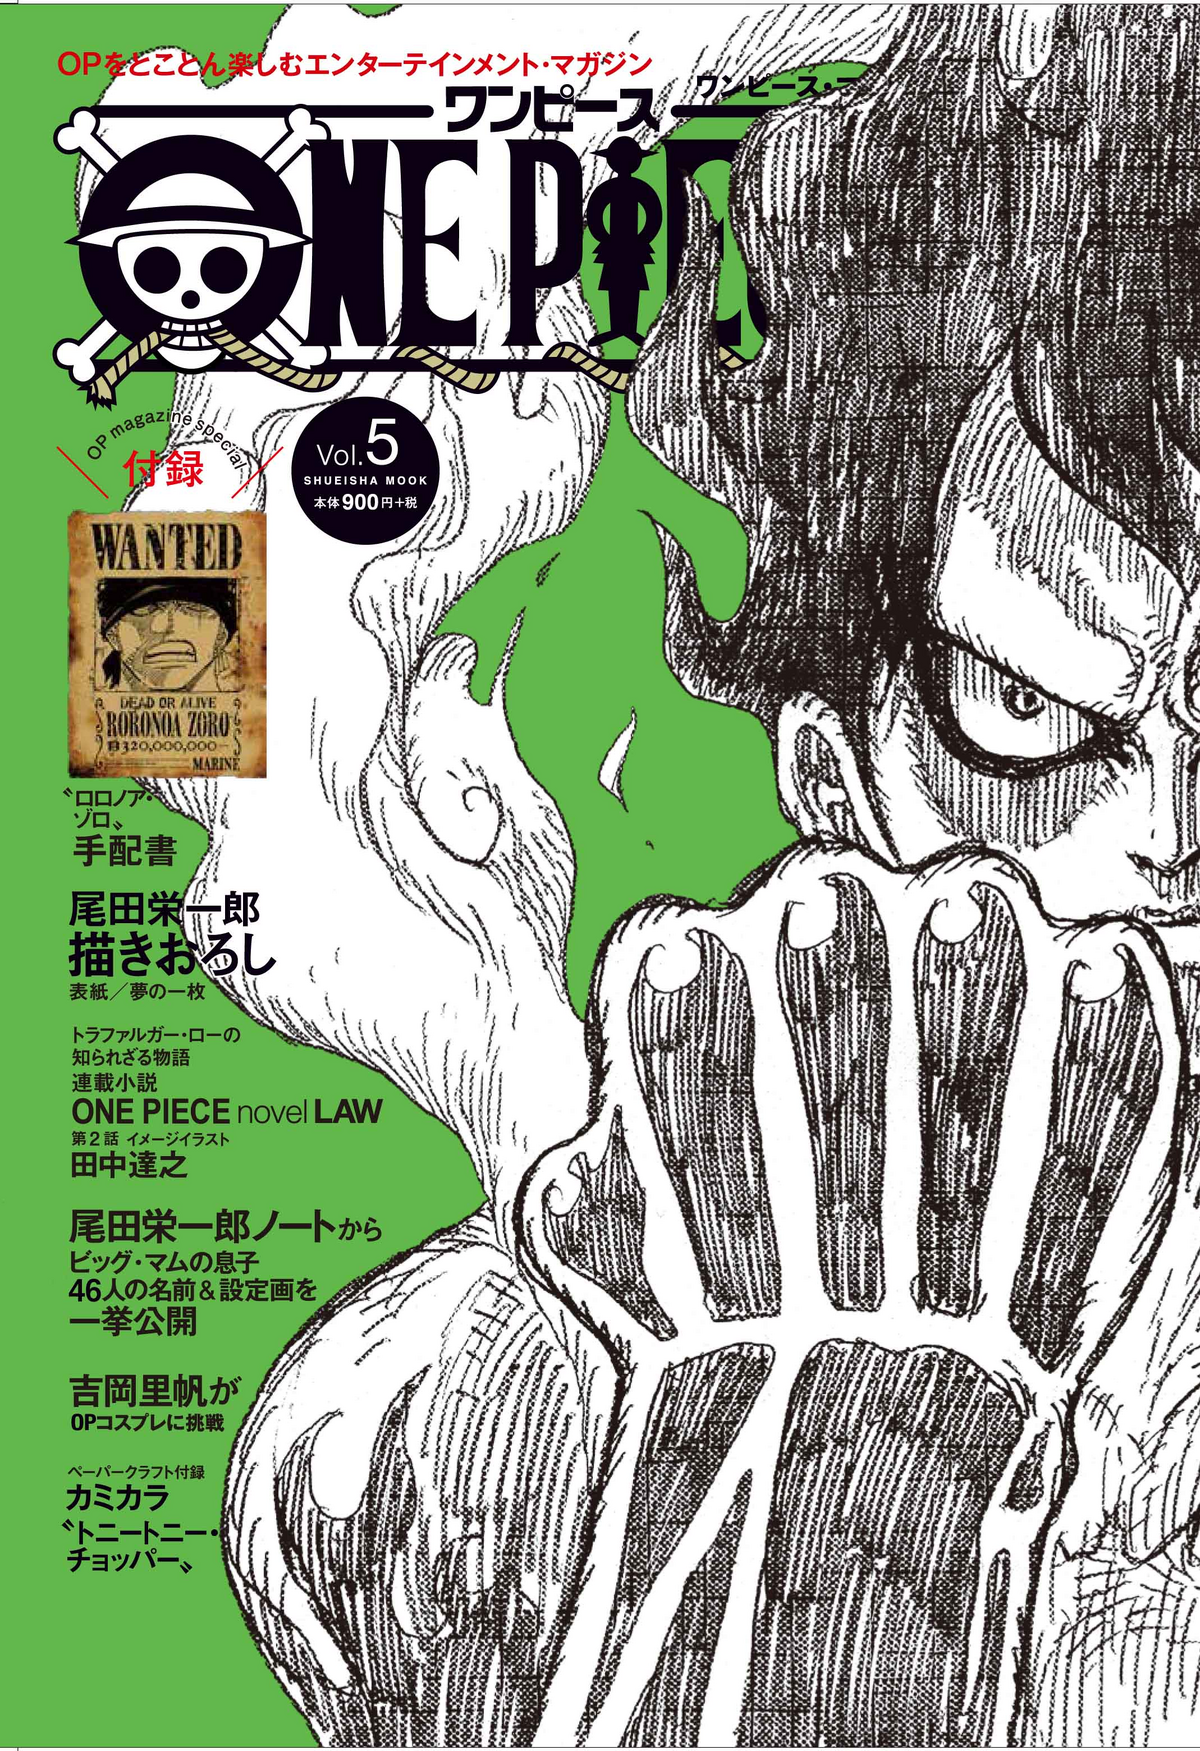 One Piece Magazine Vol.5 | One Piece Wiki | Fandom